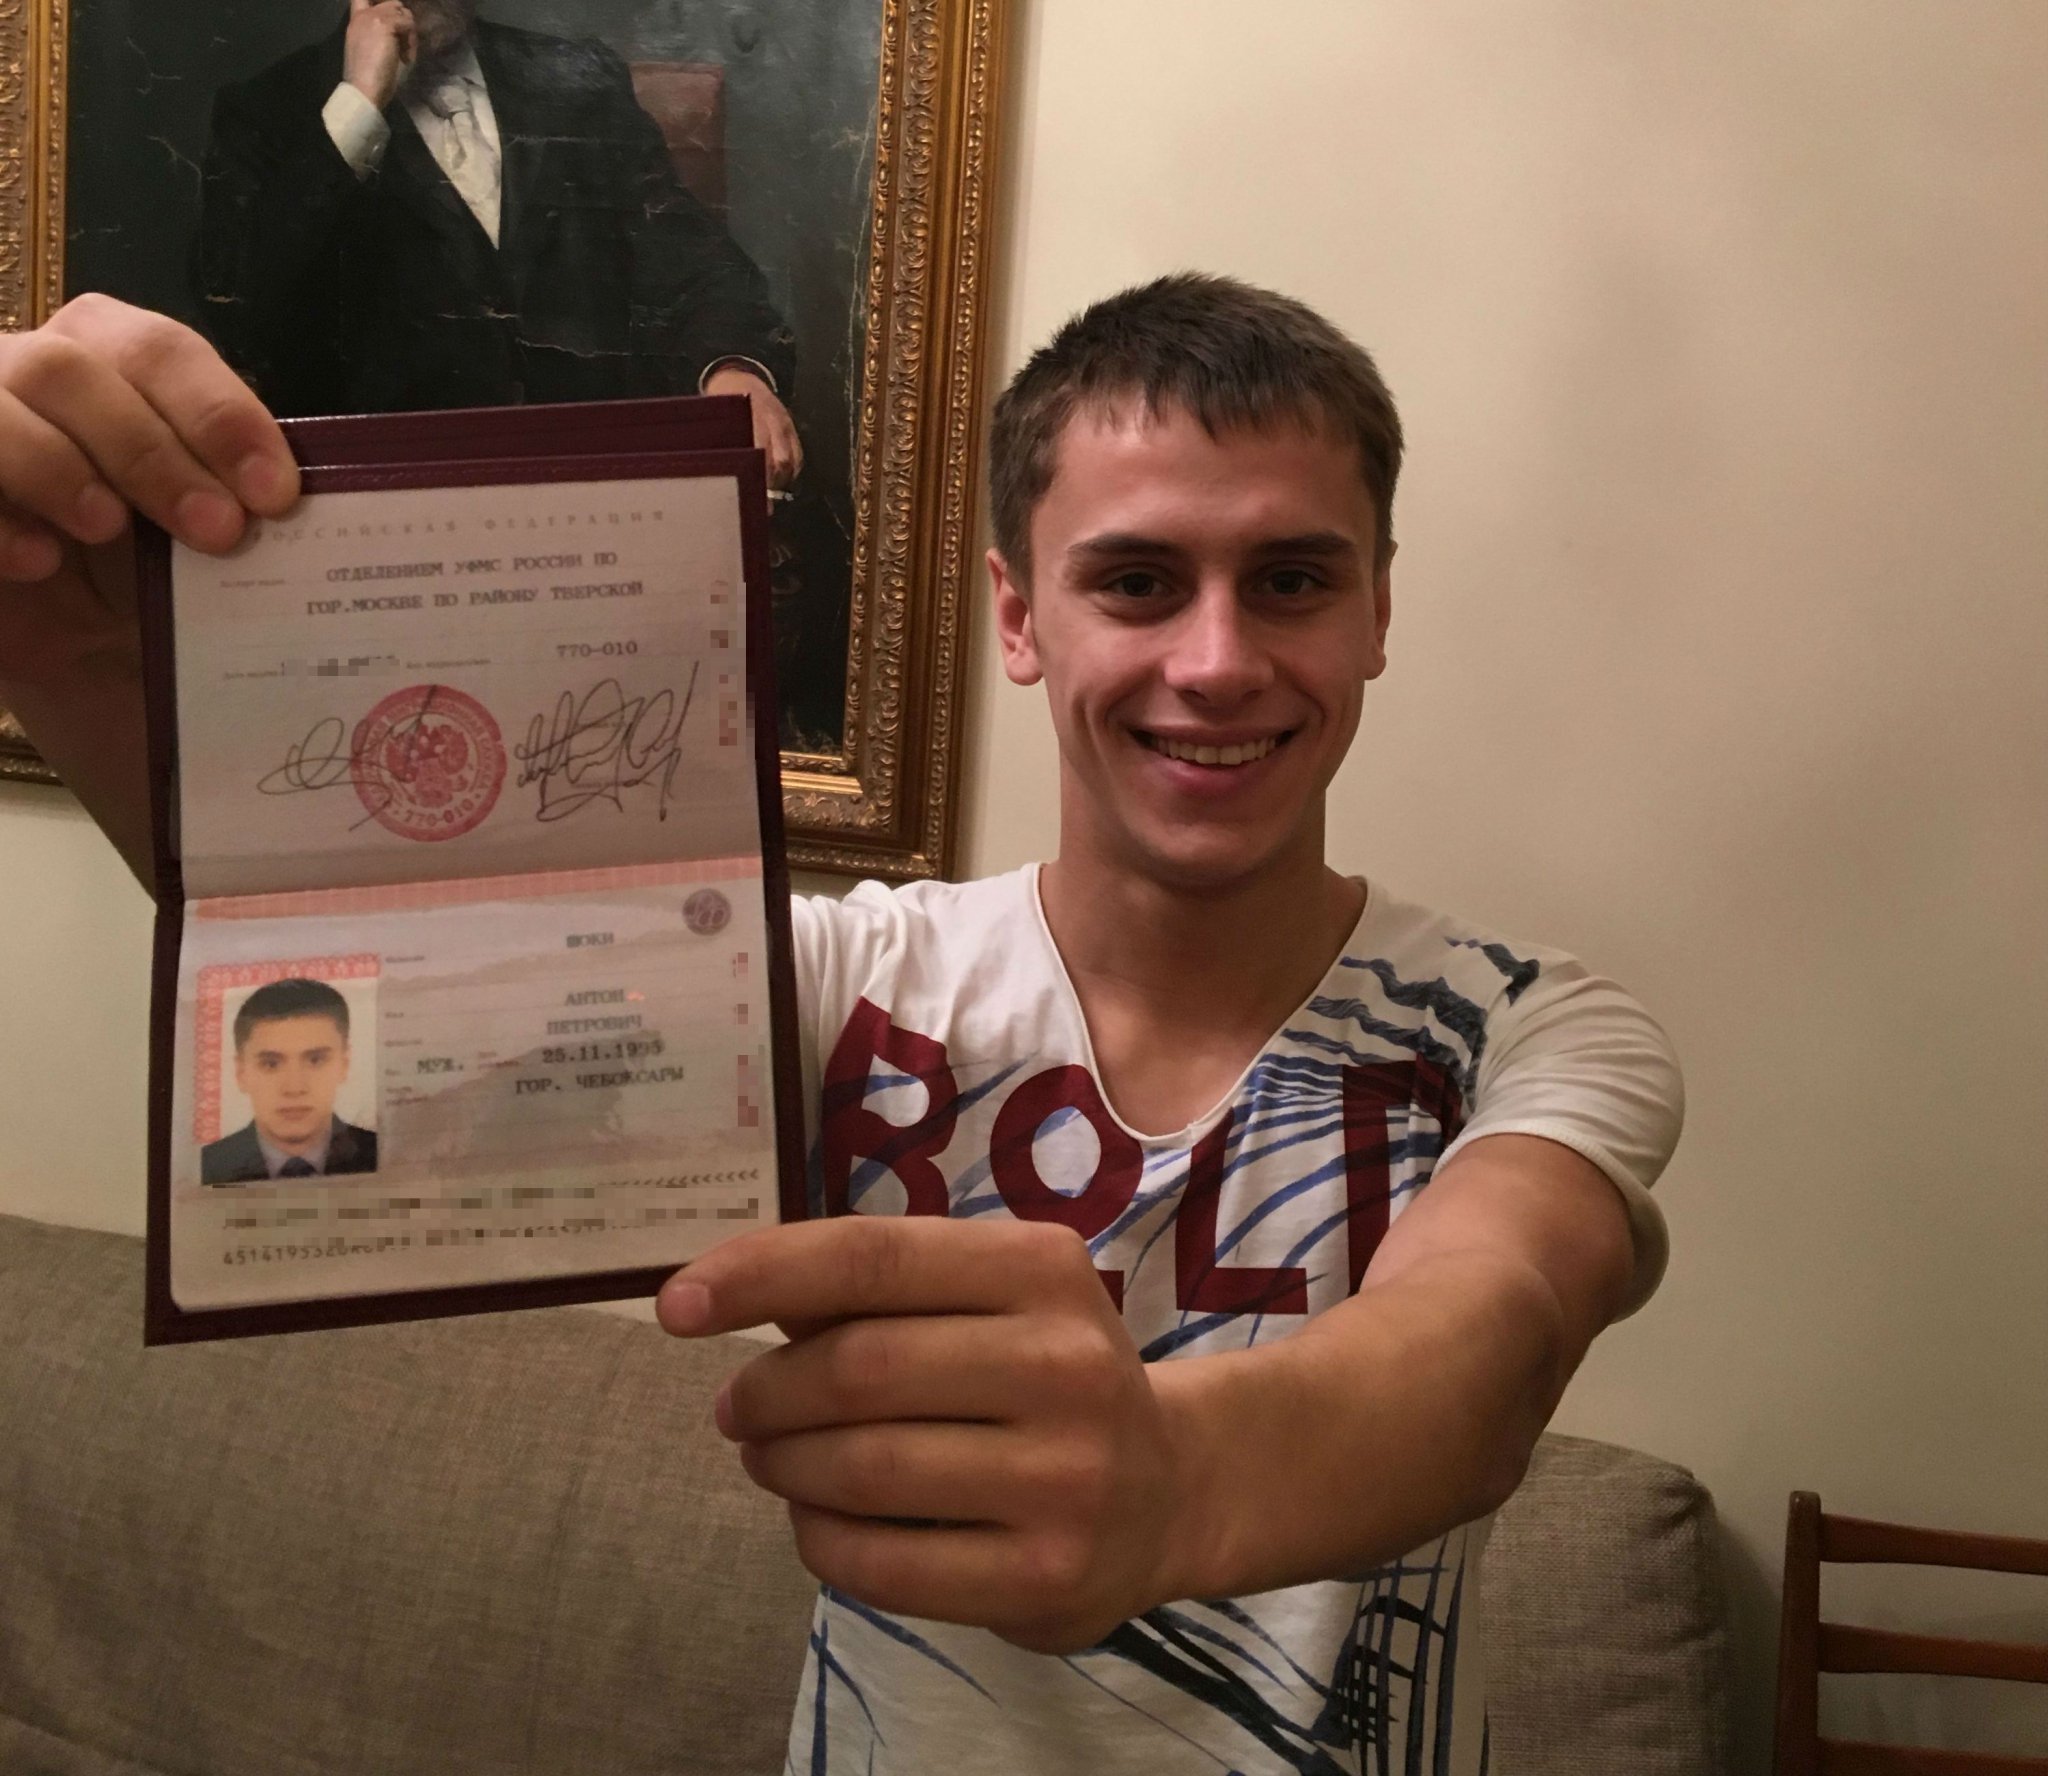 паспорта рф фото в руках